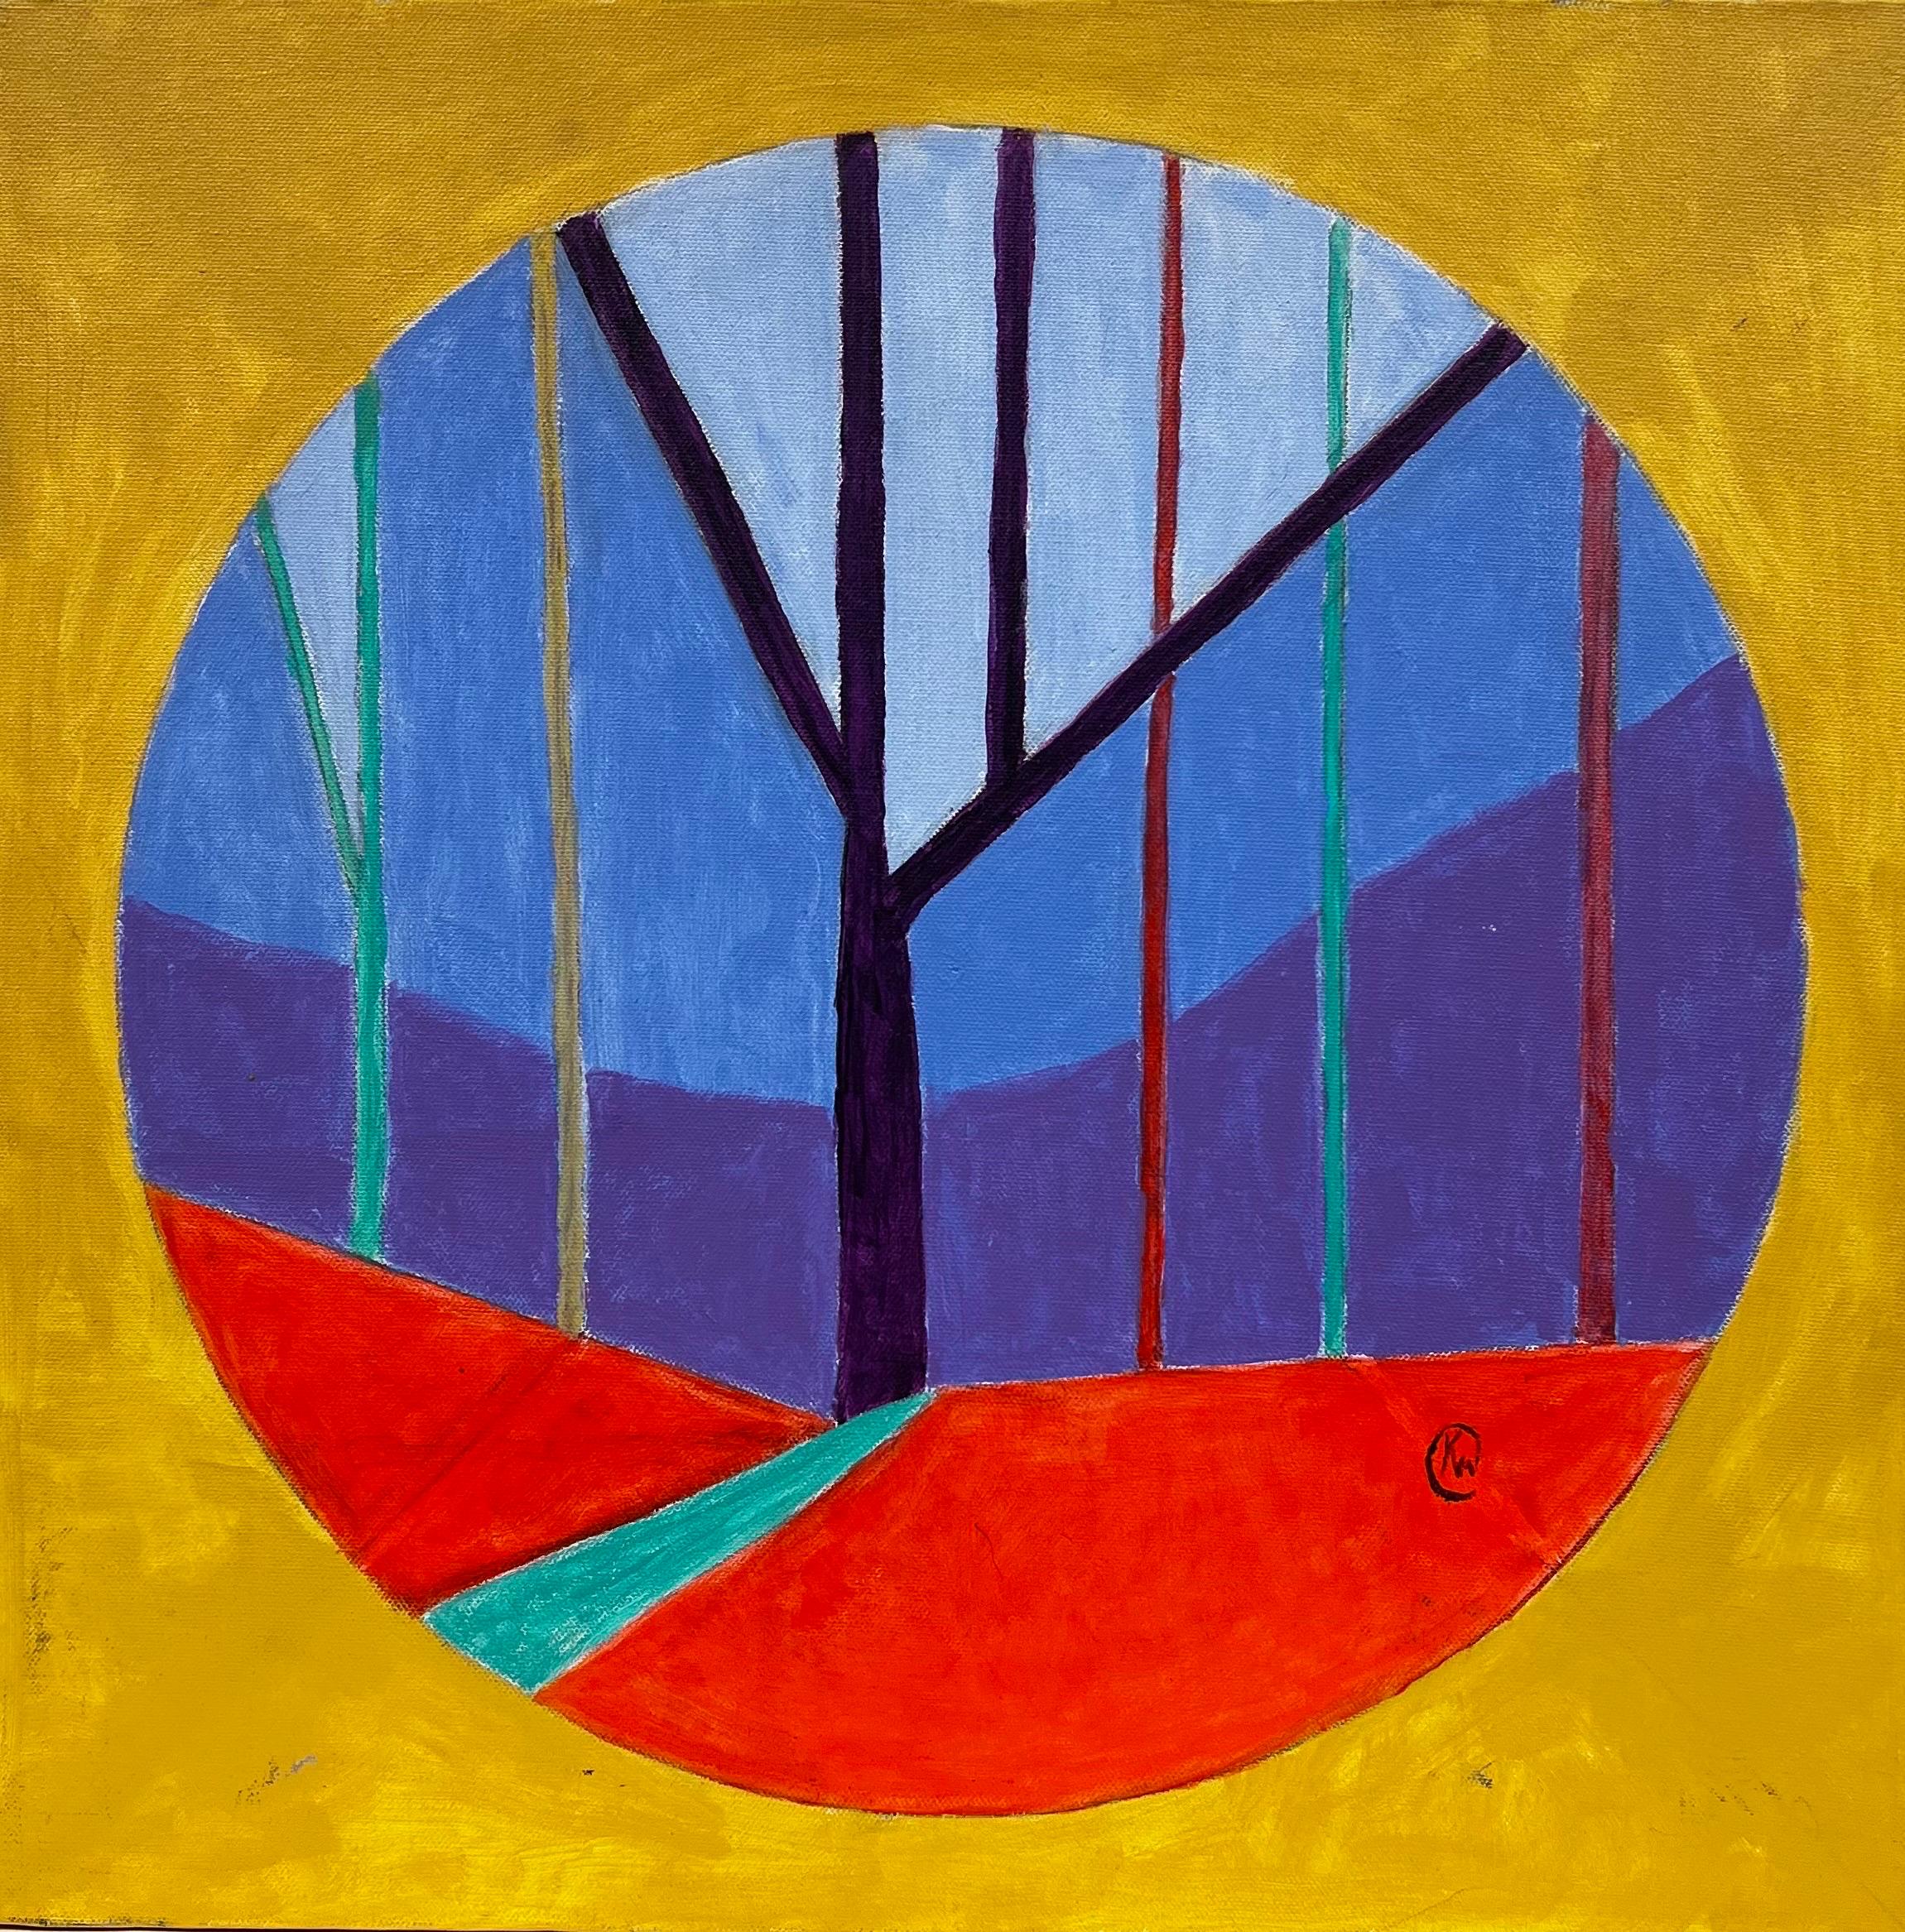 Peinture circulaire abstraite britannique contemporaine sur toile rouge, bleu, or et violet